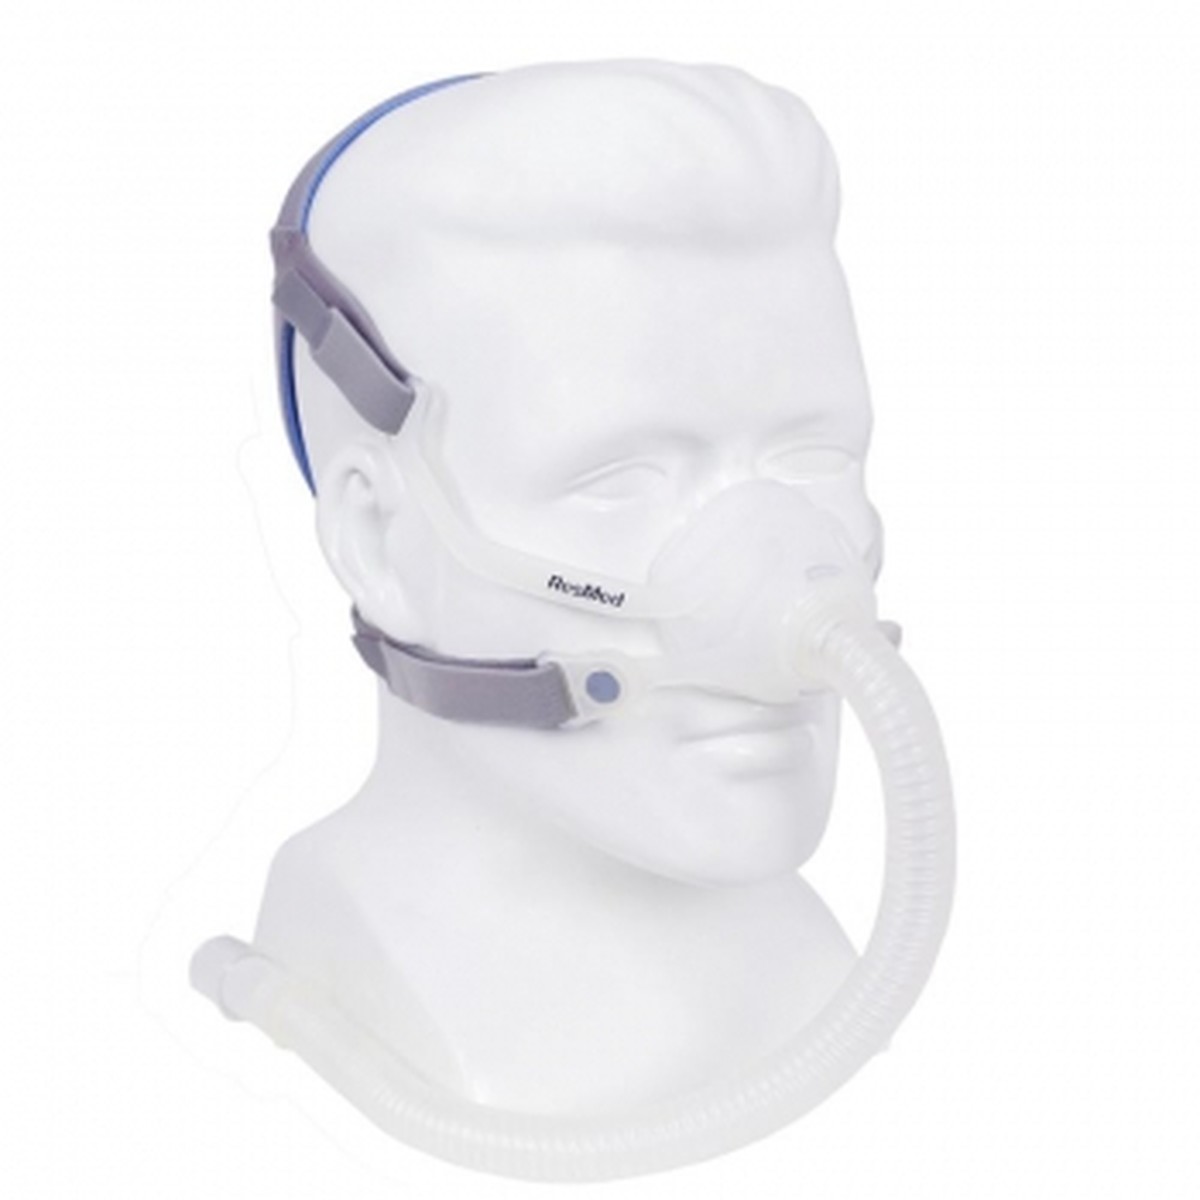 Foto do produto Máscara nasal AirFit N10 ref. 63202/63200